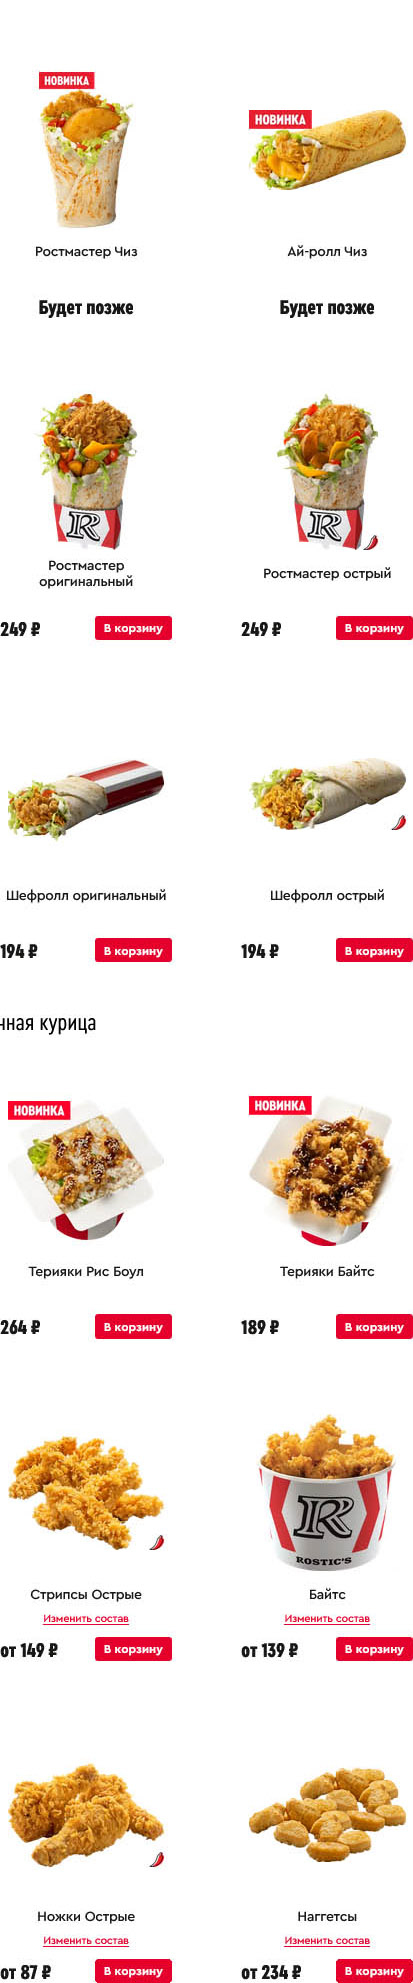 Волгоград KFC меню официальный сайт